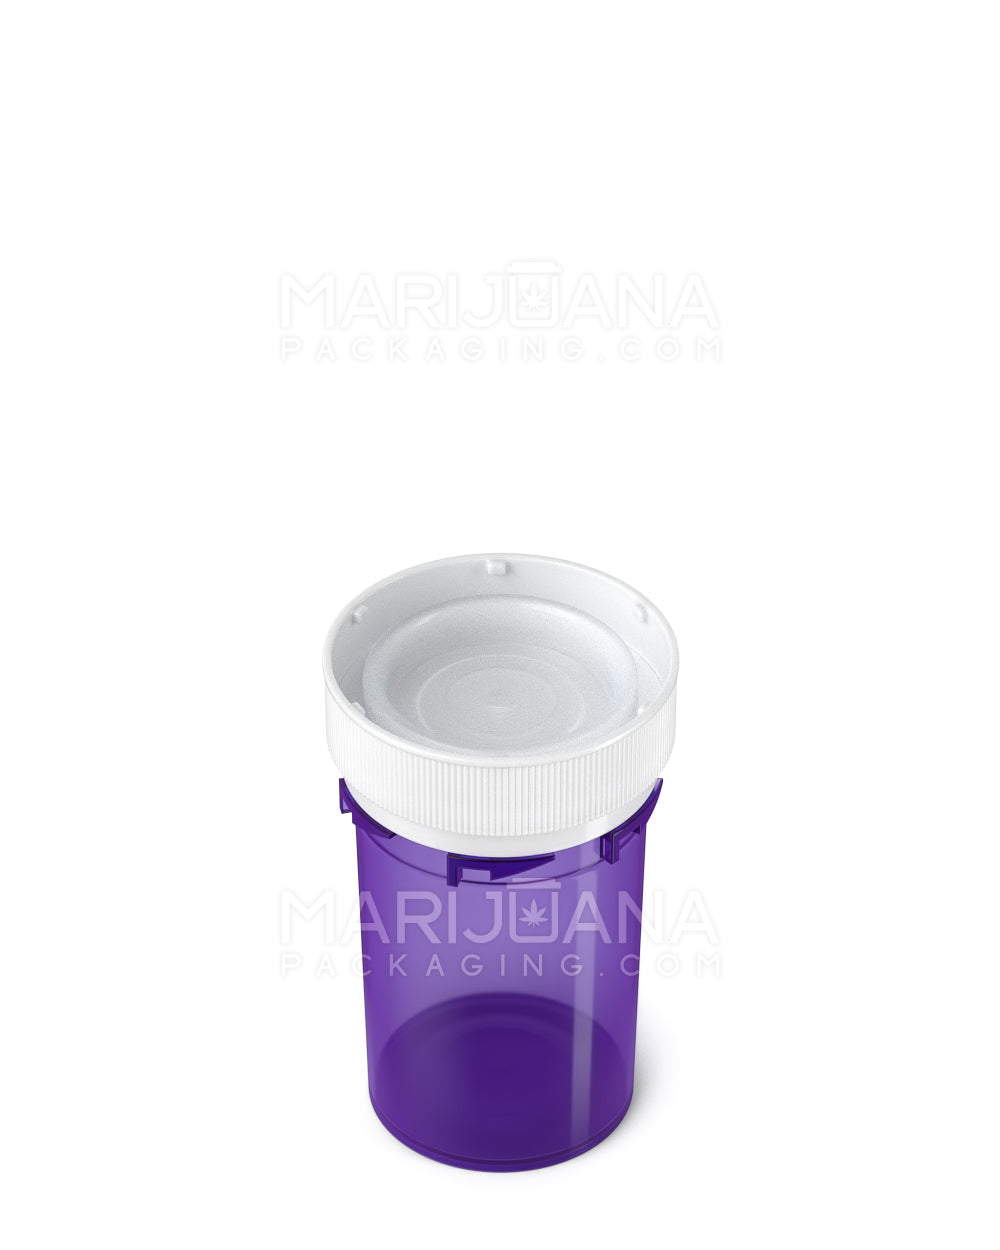 Child Resistant | Purple Reversible Cap Vials | 20dr - 3.5g - 240 Count - 5